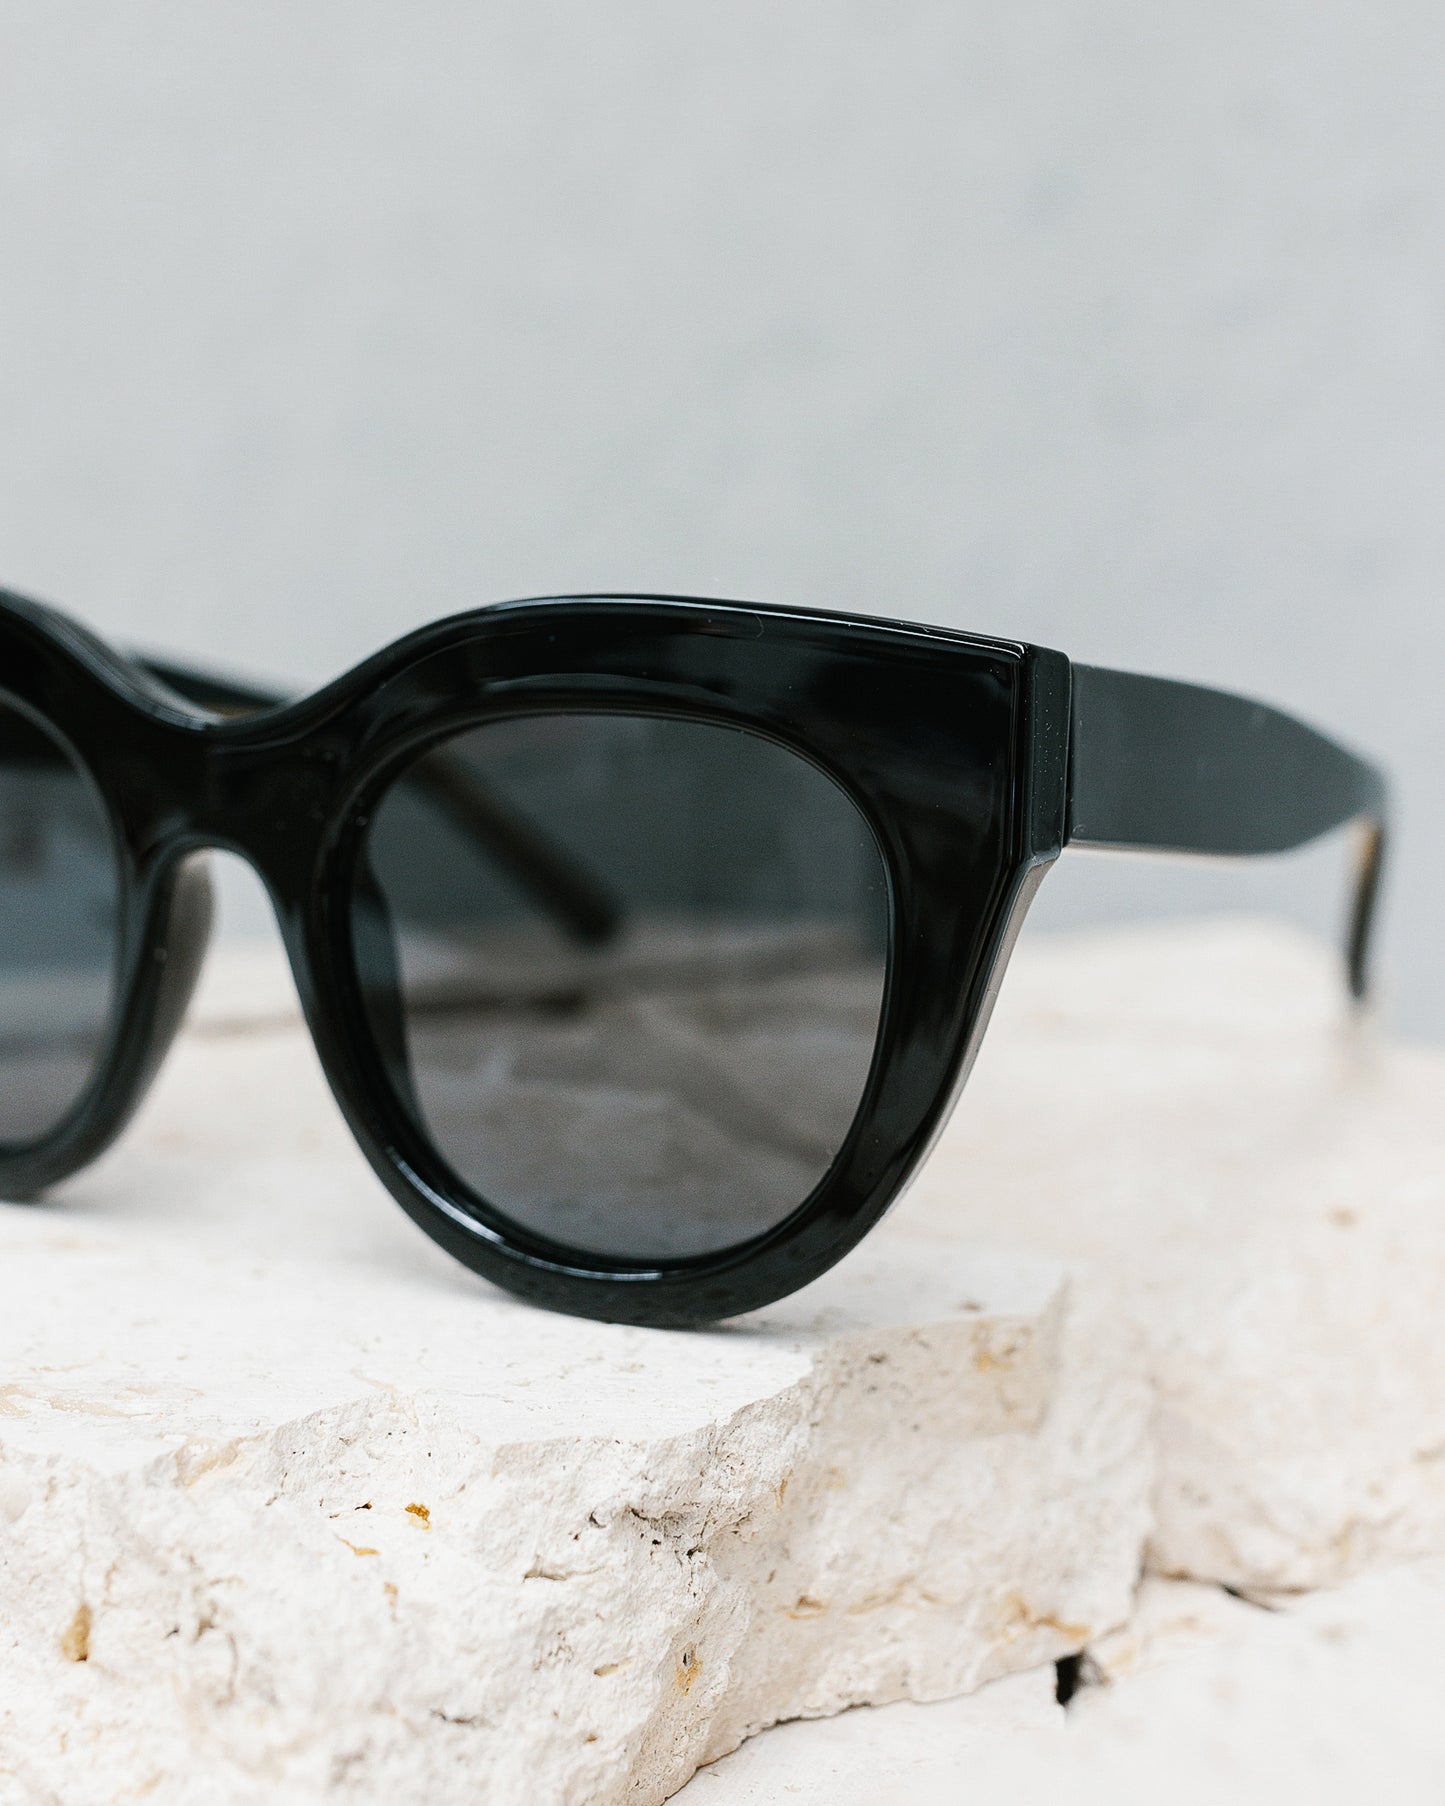 The Forever Sunglasses - Jett Black